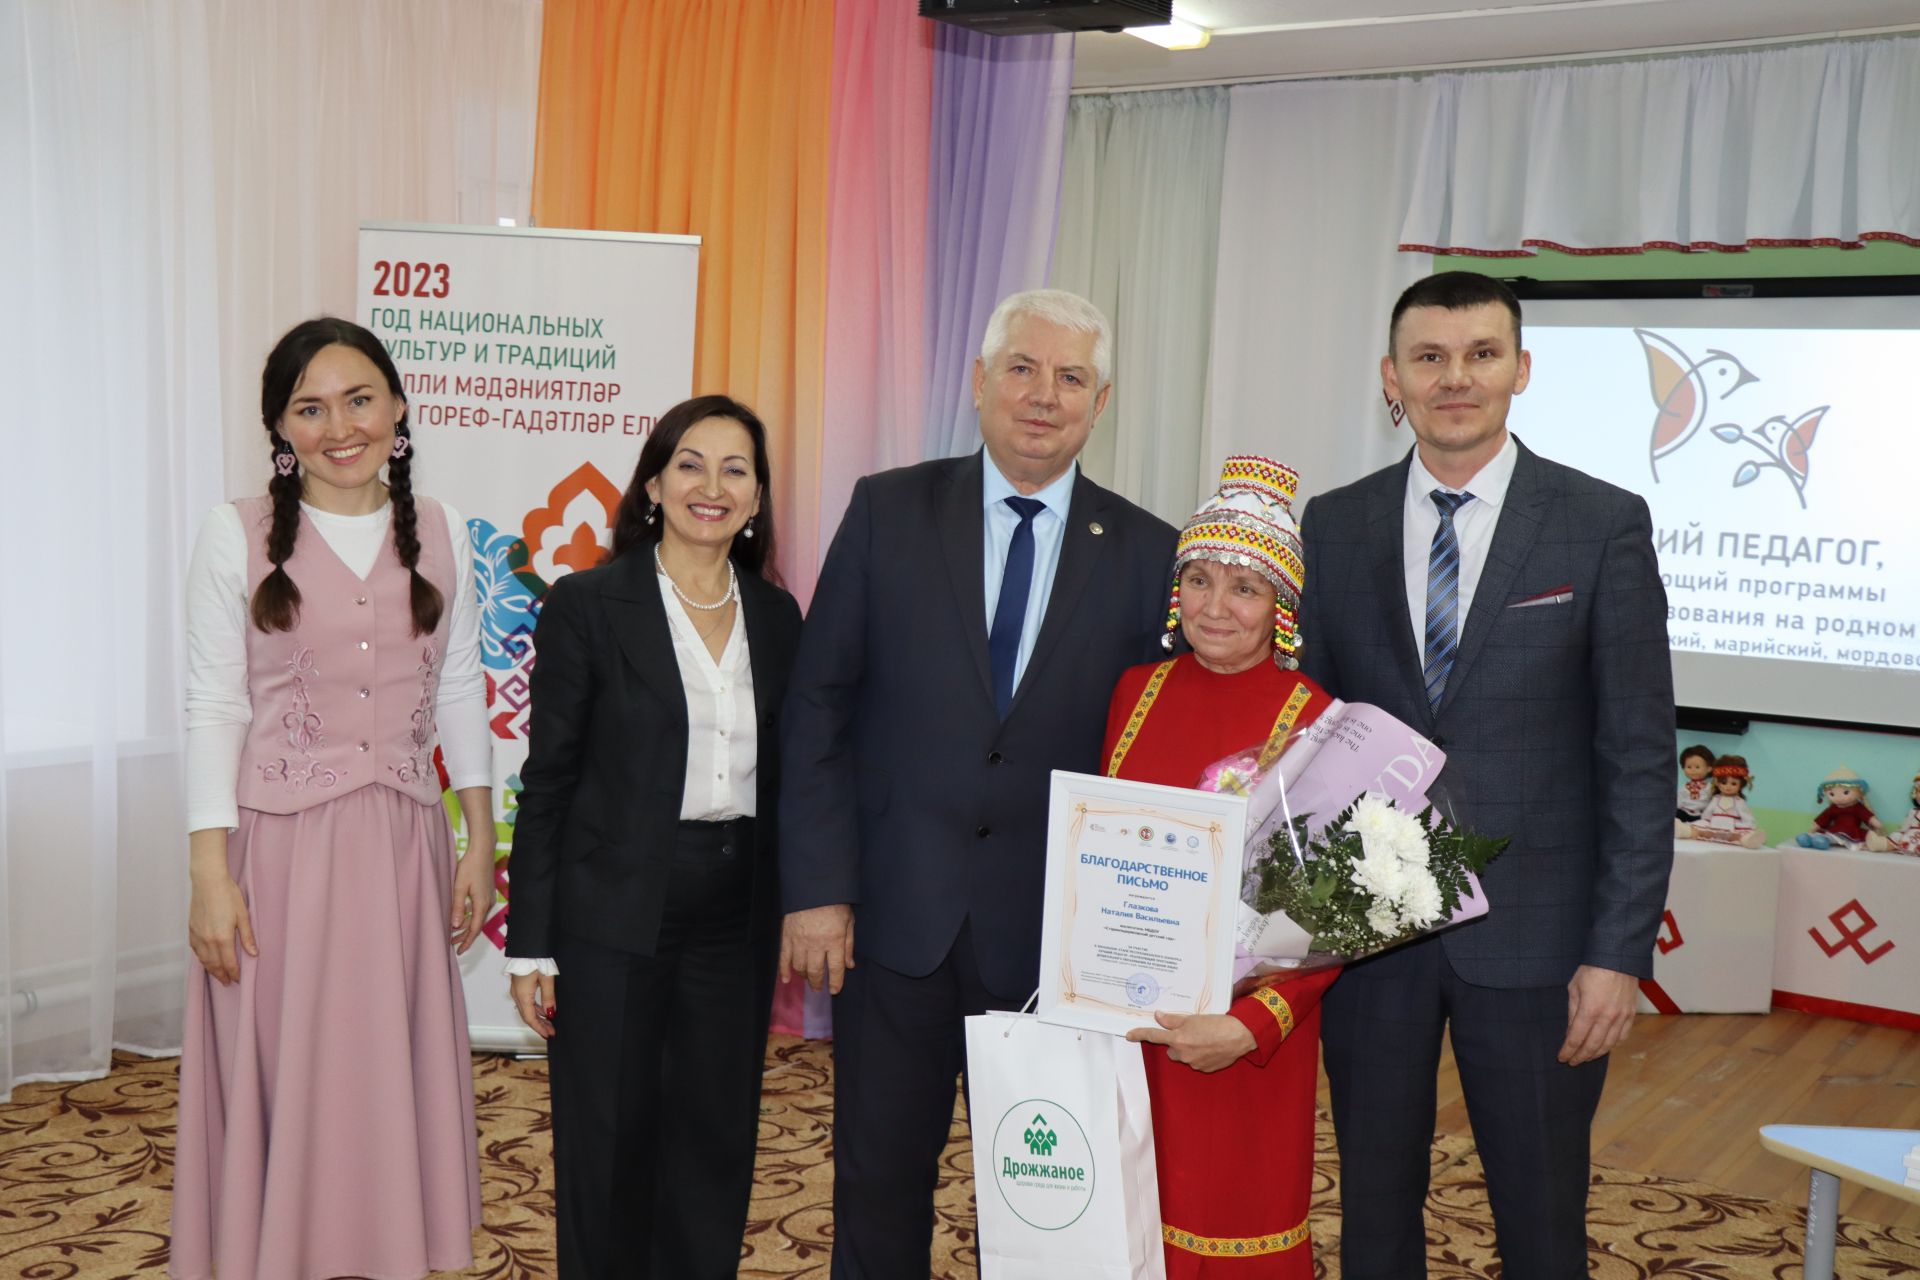 Конкурс "Лучший педагог, реализующий программы дошкольного образования на родном языке" в Дрожжаном